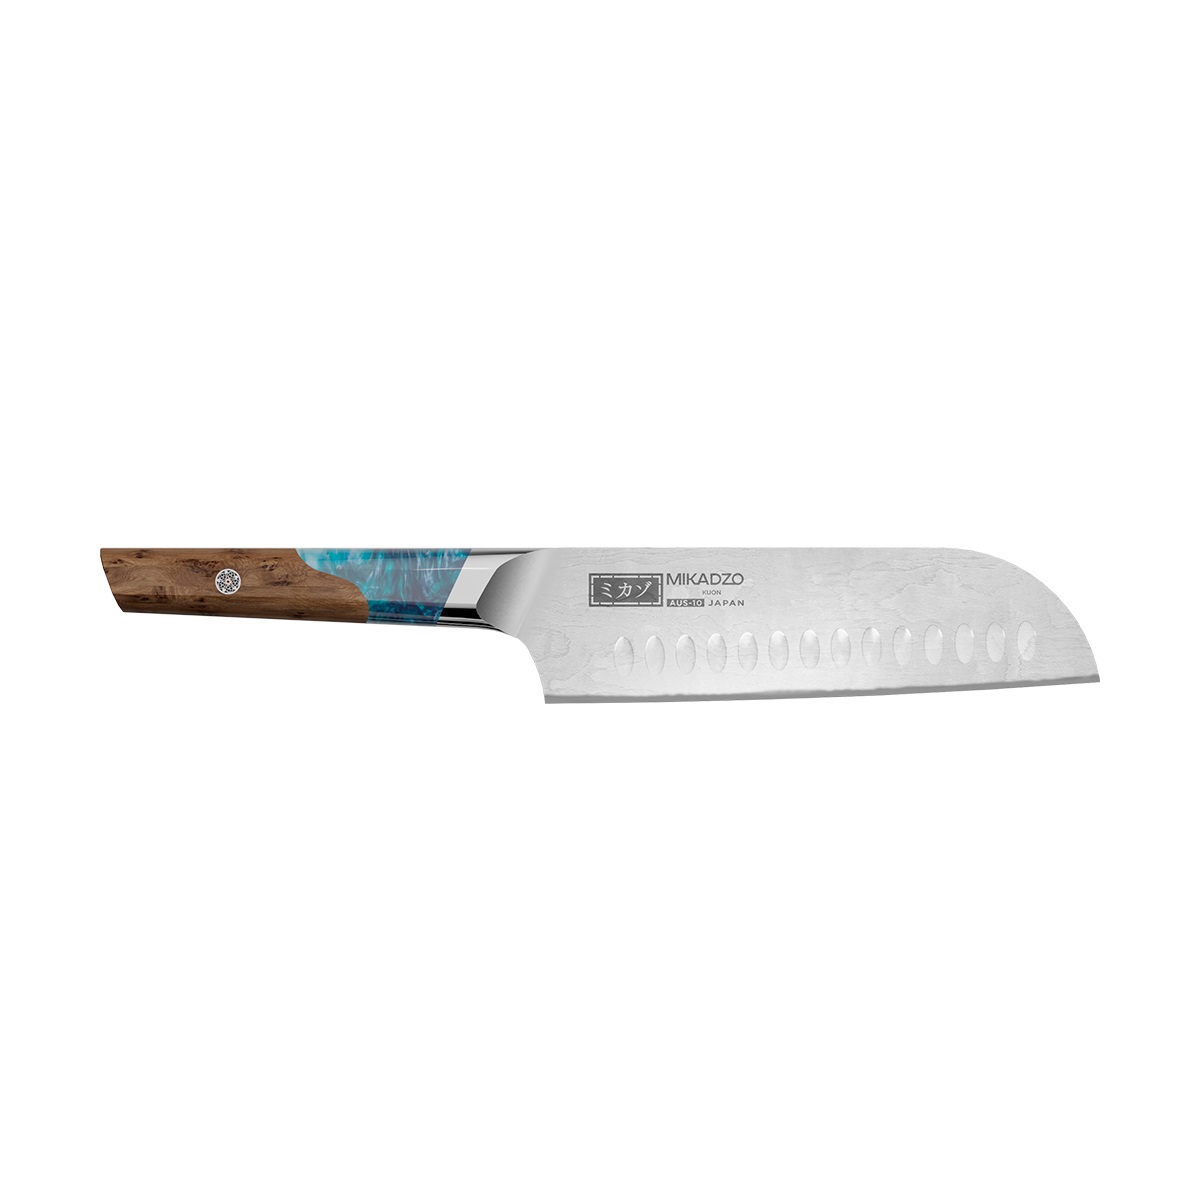 Кухонный нож Omoikiri Damascus Kuon 4992036 кухонный нож omoikiri micadzo yamata yk 01 59 pa 89